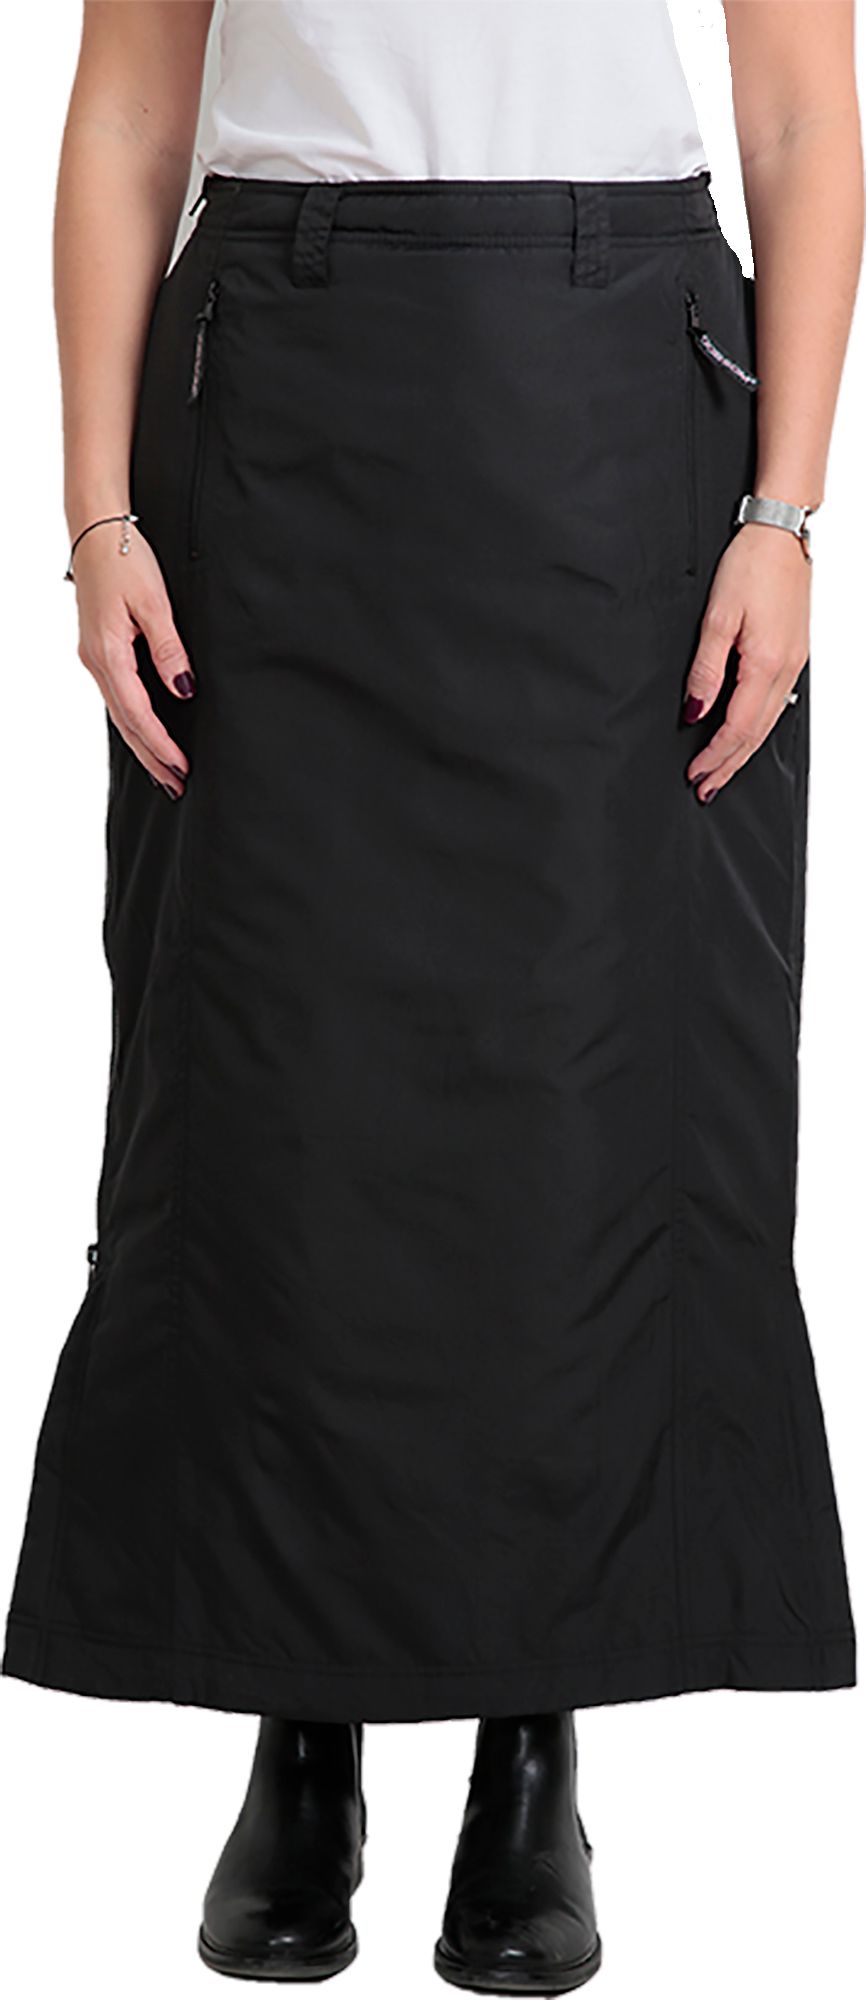 Comfort Skirt Black